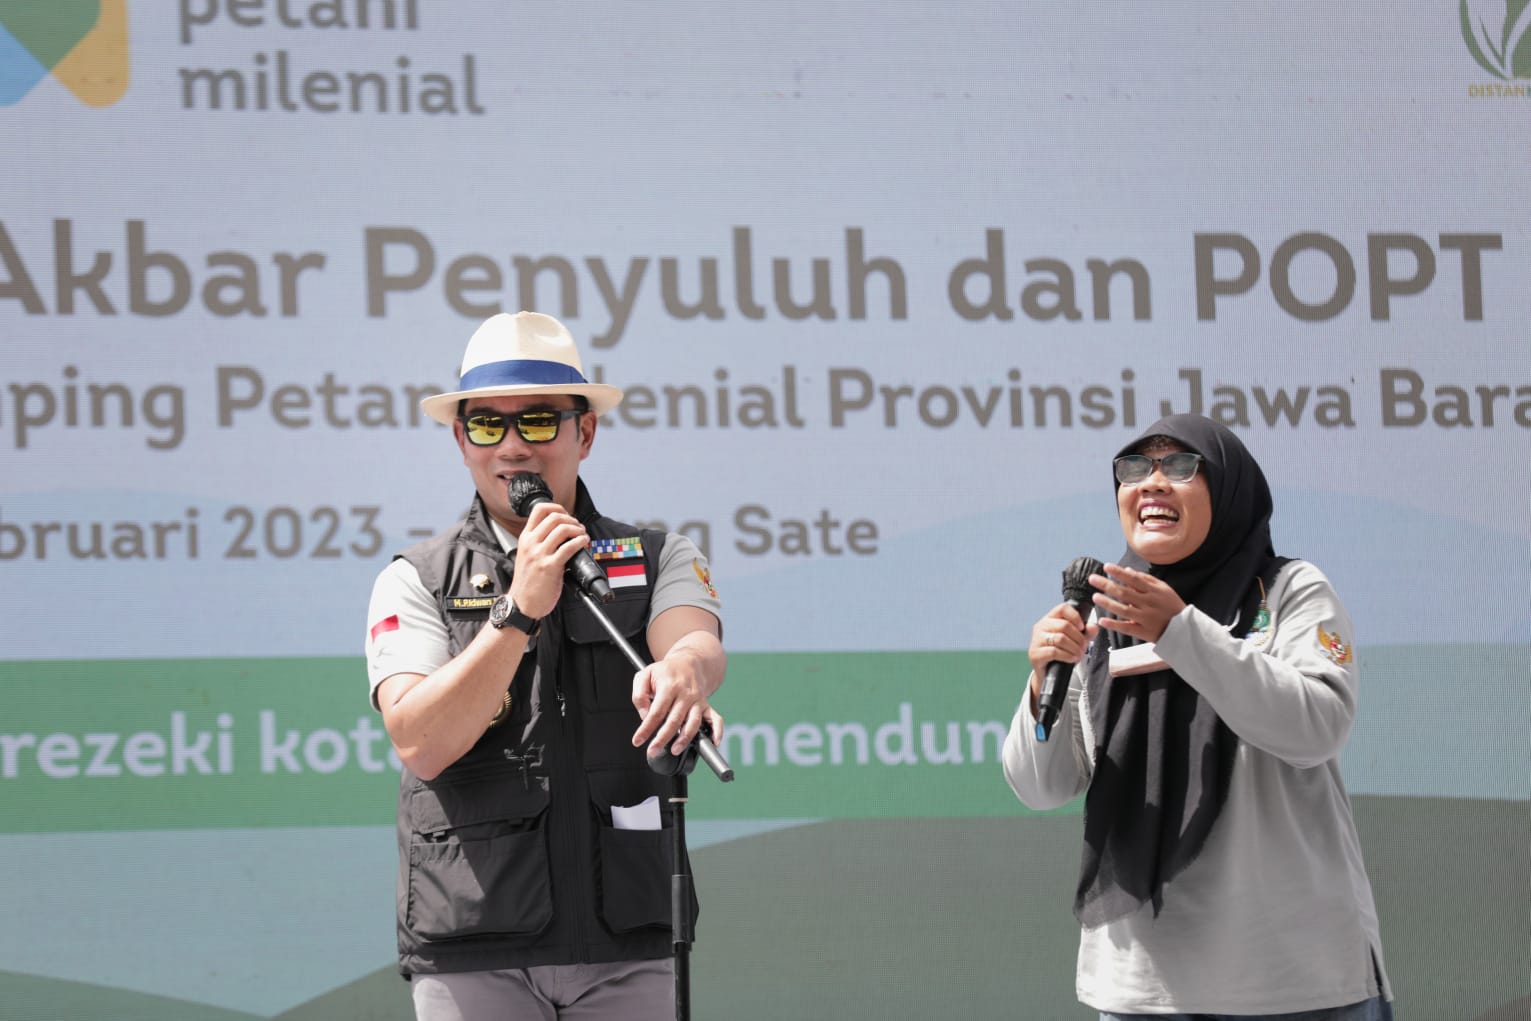 Ridwan Kamil Apresiasi Penyuluh-POPT, Komitmen Jaga Ketahanan Pangan di Jabar